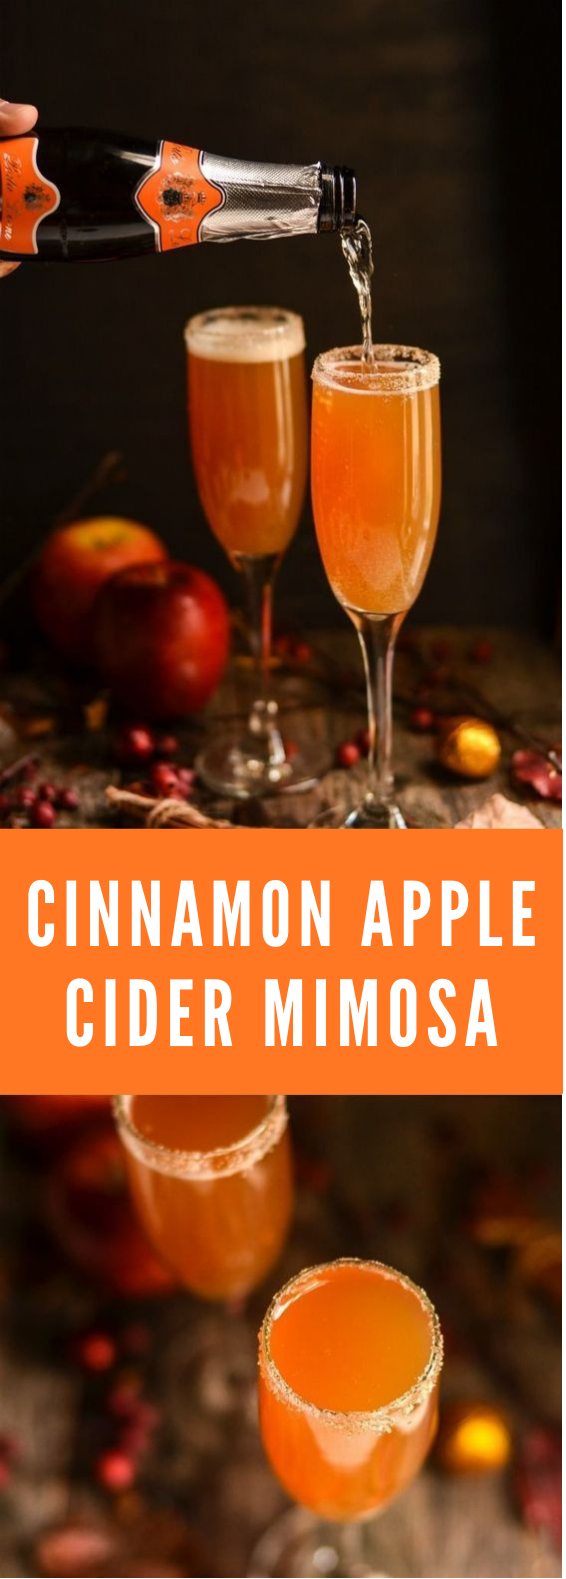 CRISP & DELICIOUS CINNAMON APPLE CIDER MIMOSA #Drink #Mimosa